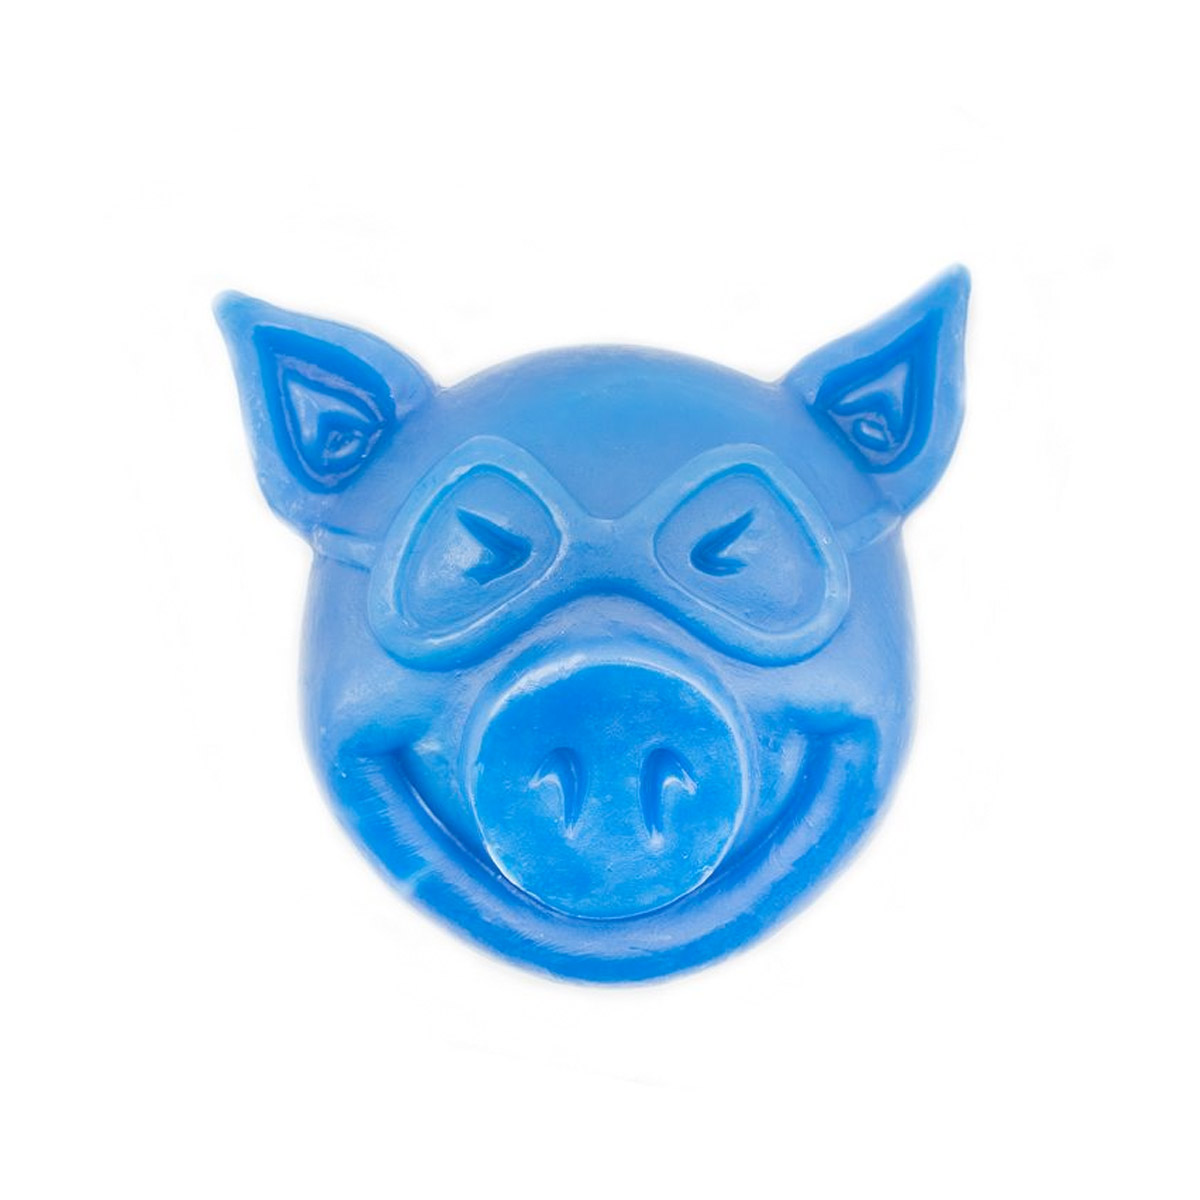 Pig Skatewachs Pig Head Curb Wax (blue)